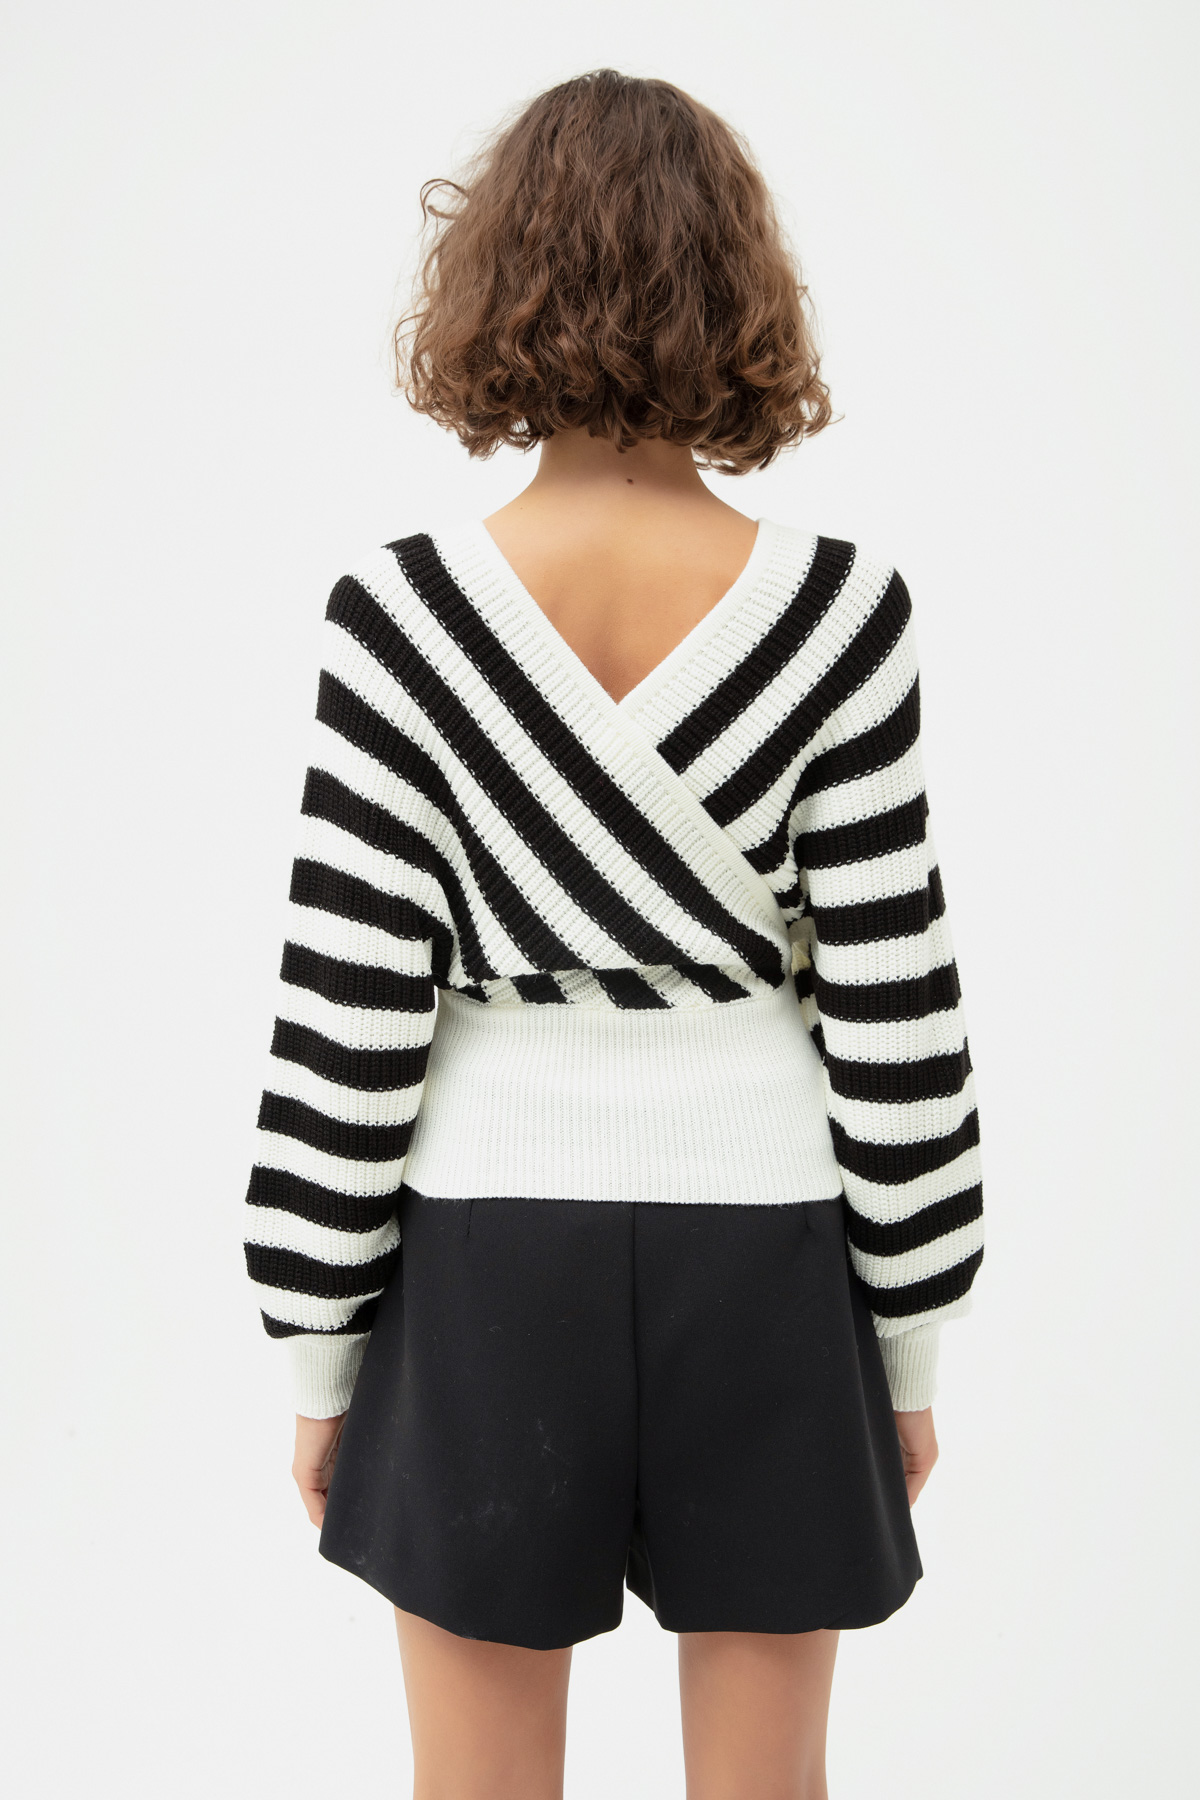 Women's White V-Neck Striped Knitwear Sweater